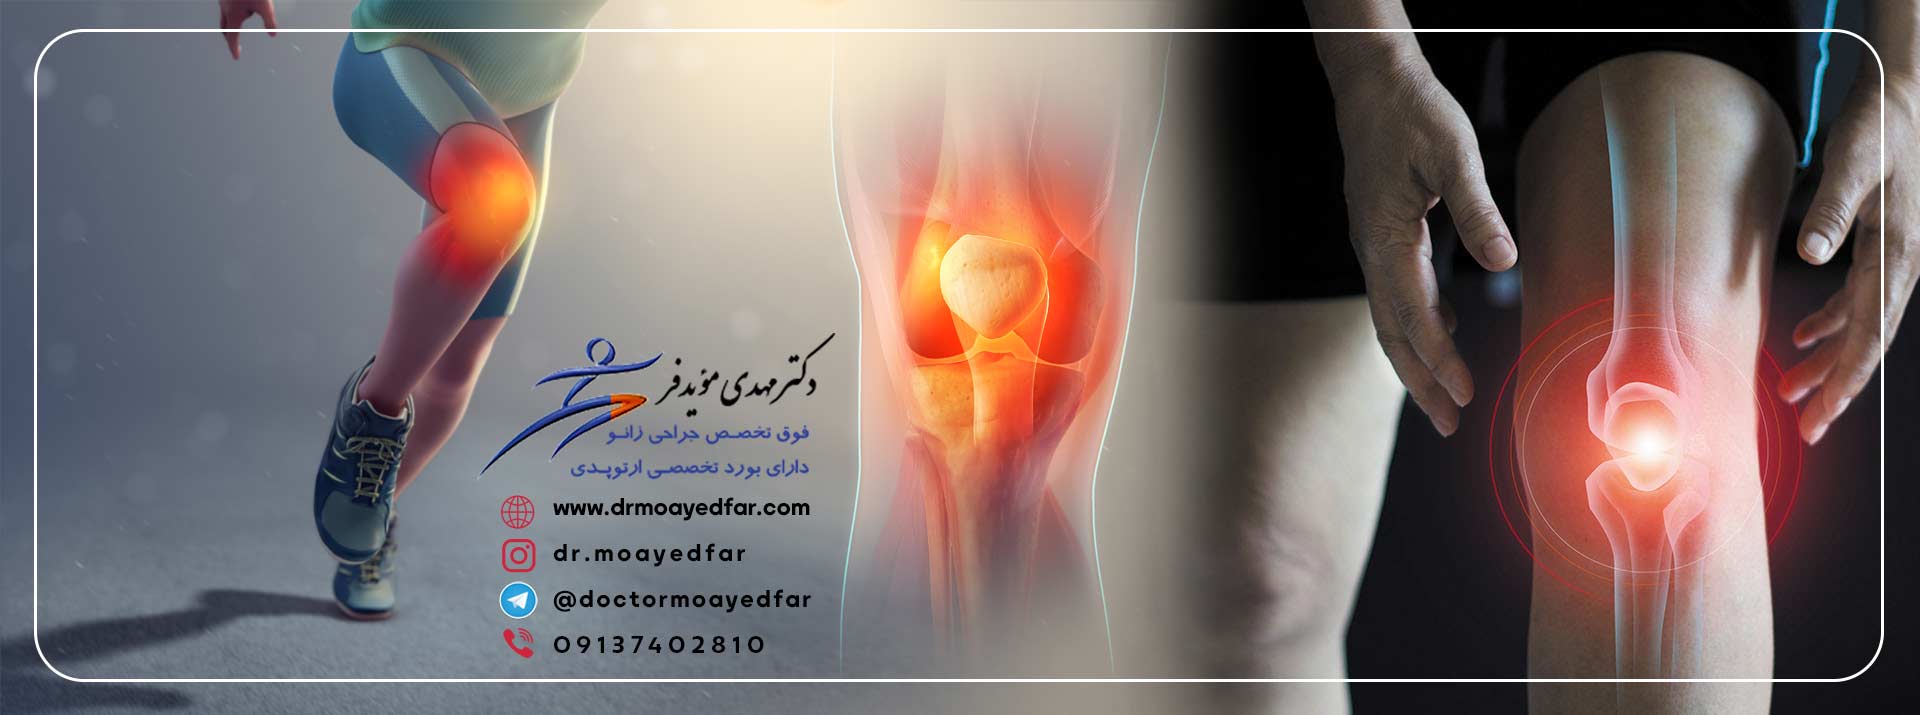 7584-بهترین-فوق-تخصص-درمان-بیماری-های-زانو-جراح-زانو-دکتر-متخصص-زانو-درد-زانو-اصفهان-knee-best-doctor-iran